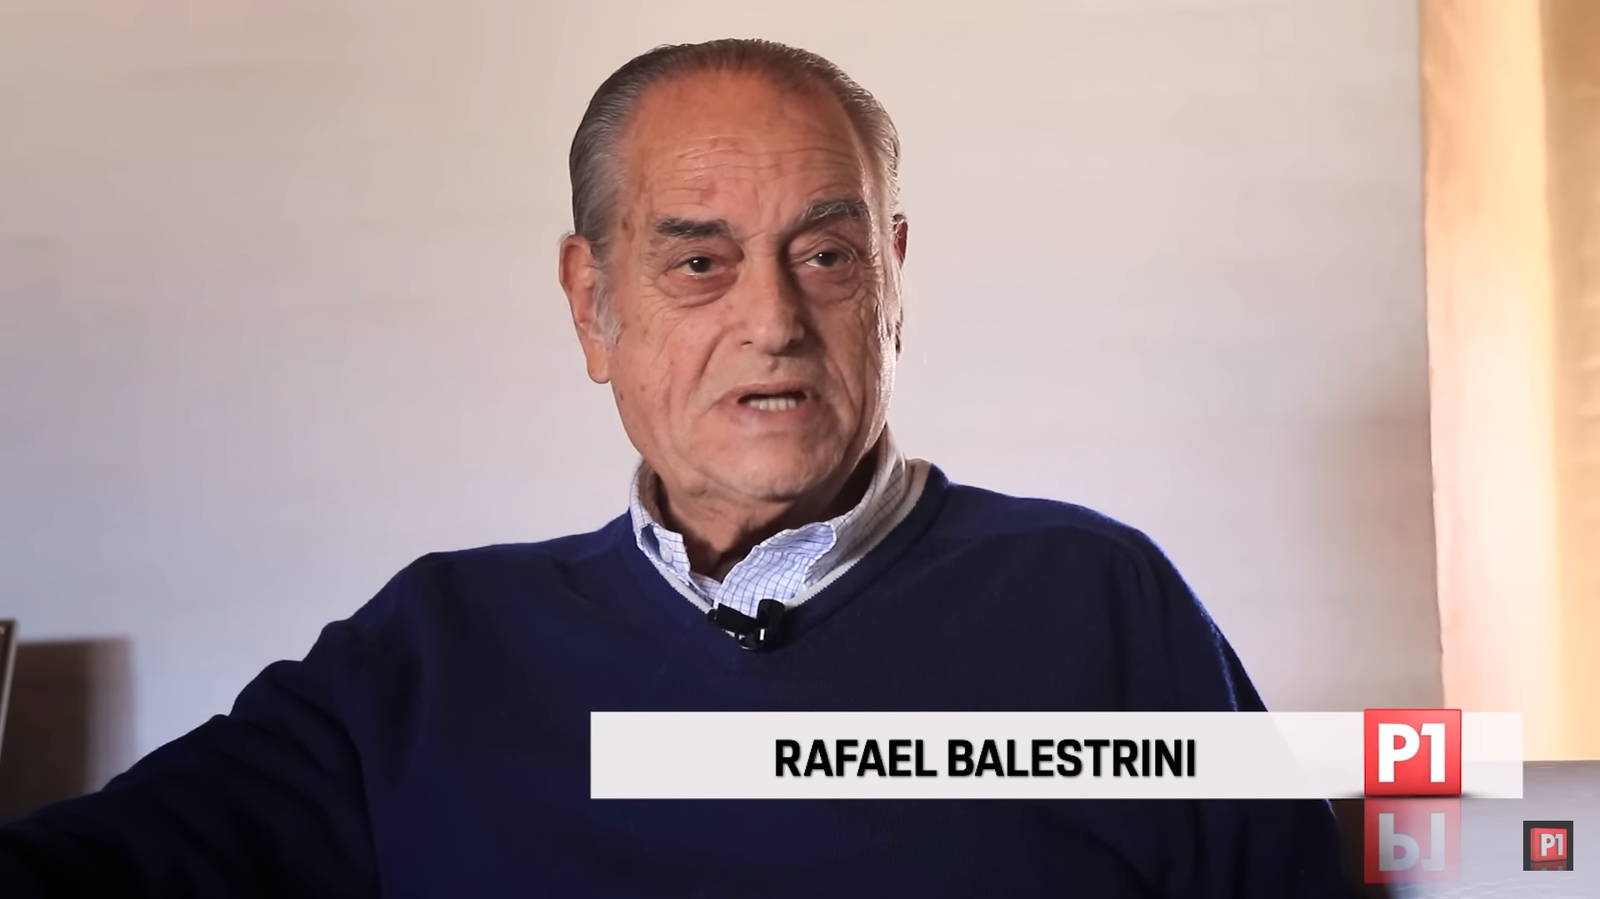 Rafael Balestrini